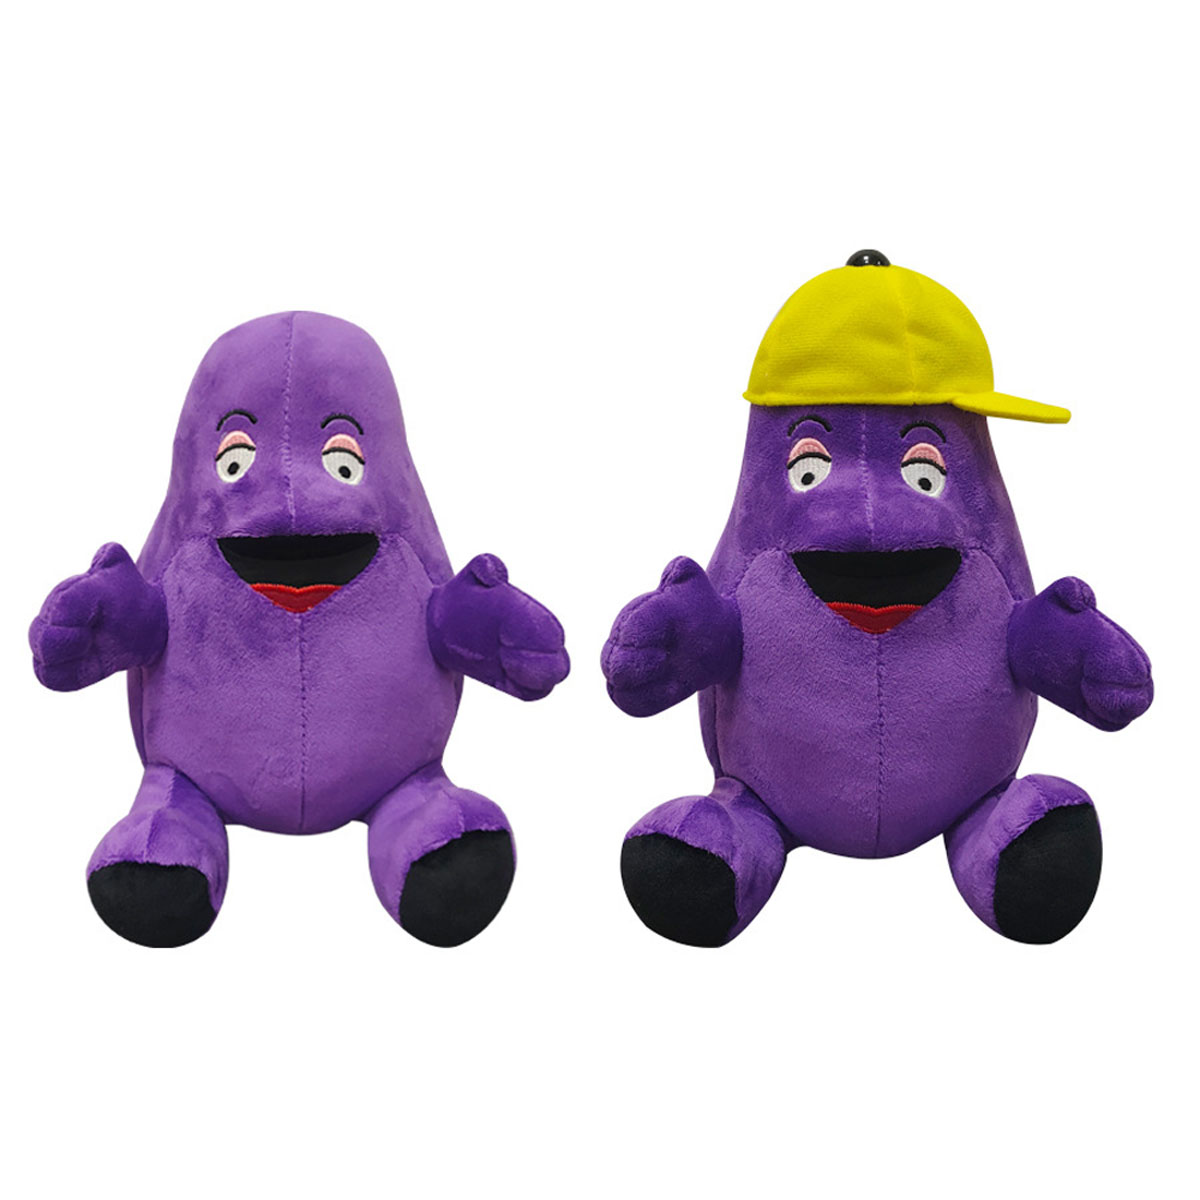 Grimace Shake Killer Purple Milkshake Stuffed Doll Toys